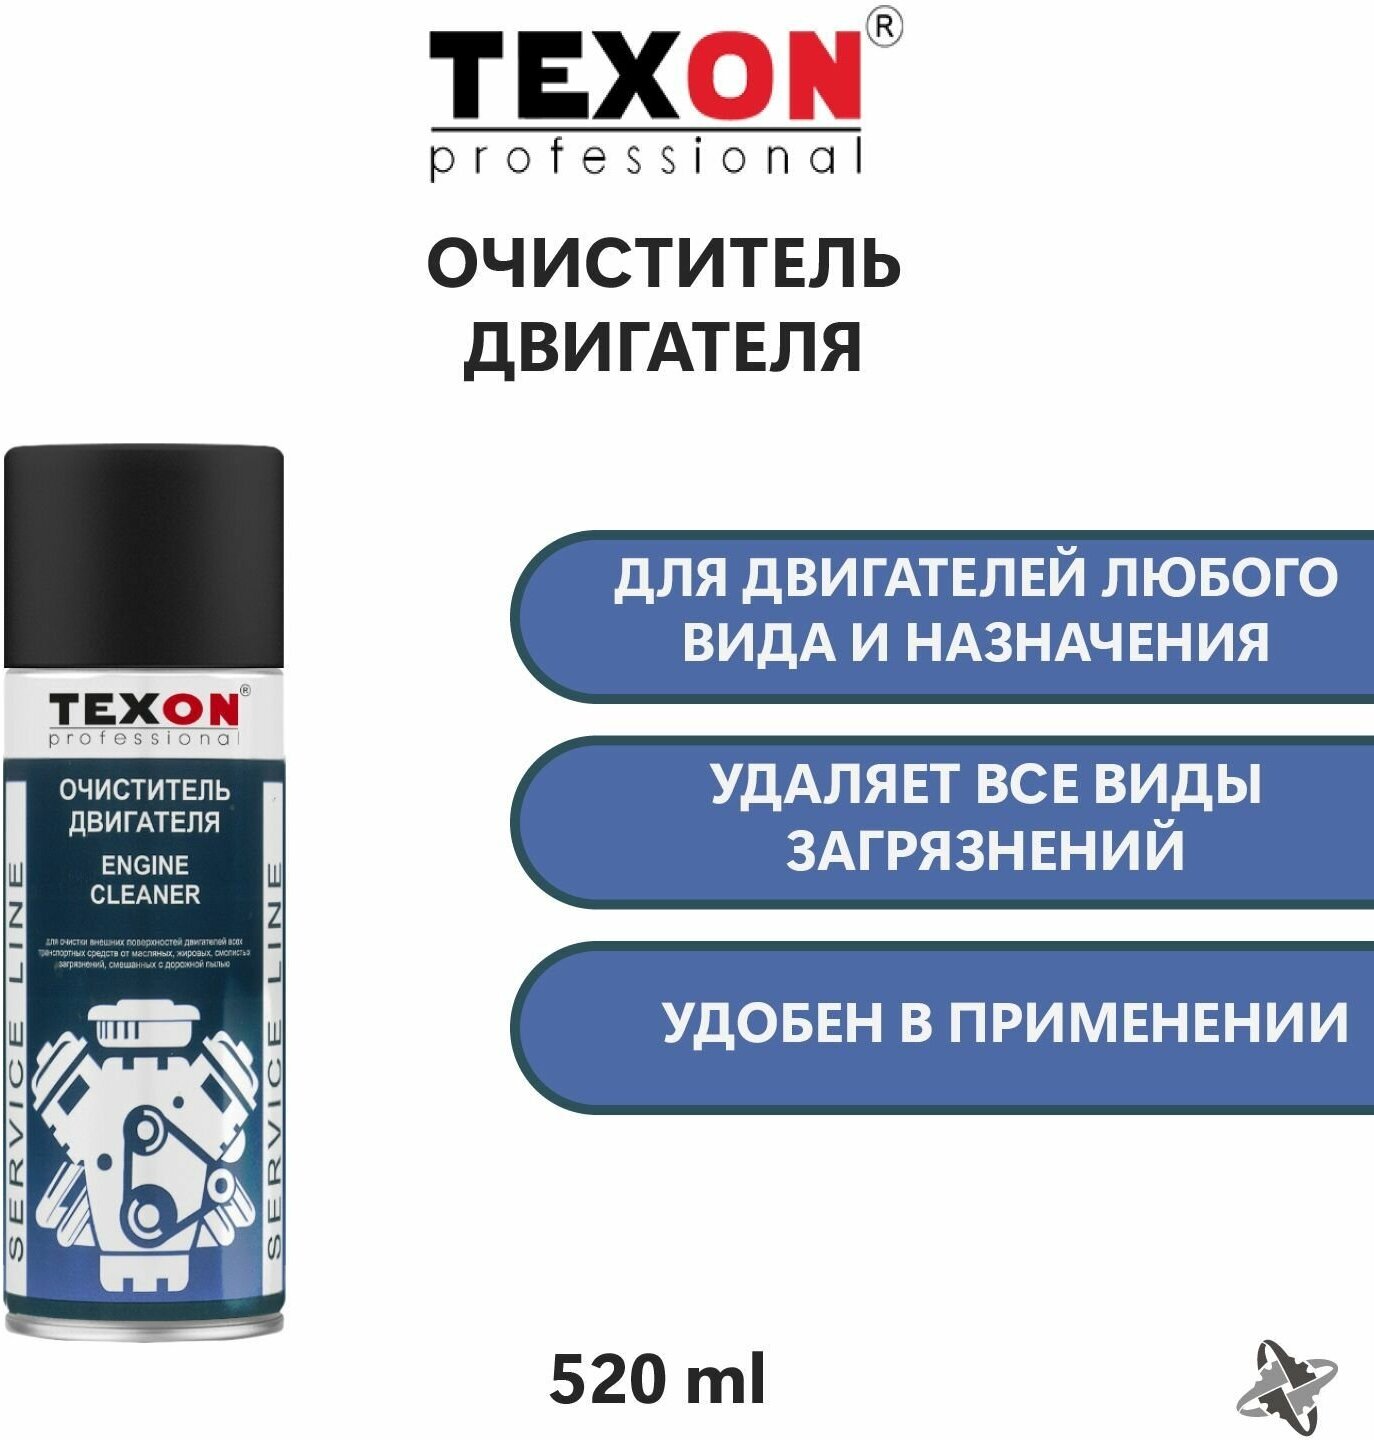 Очиститель двигателя TEXON